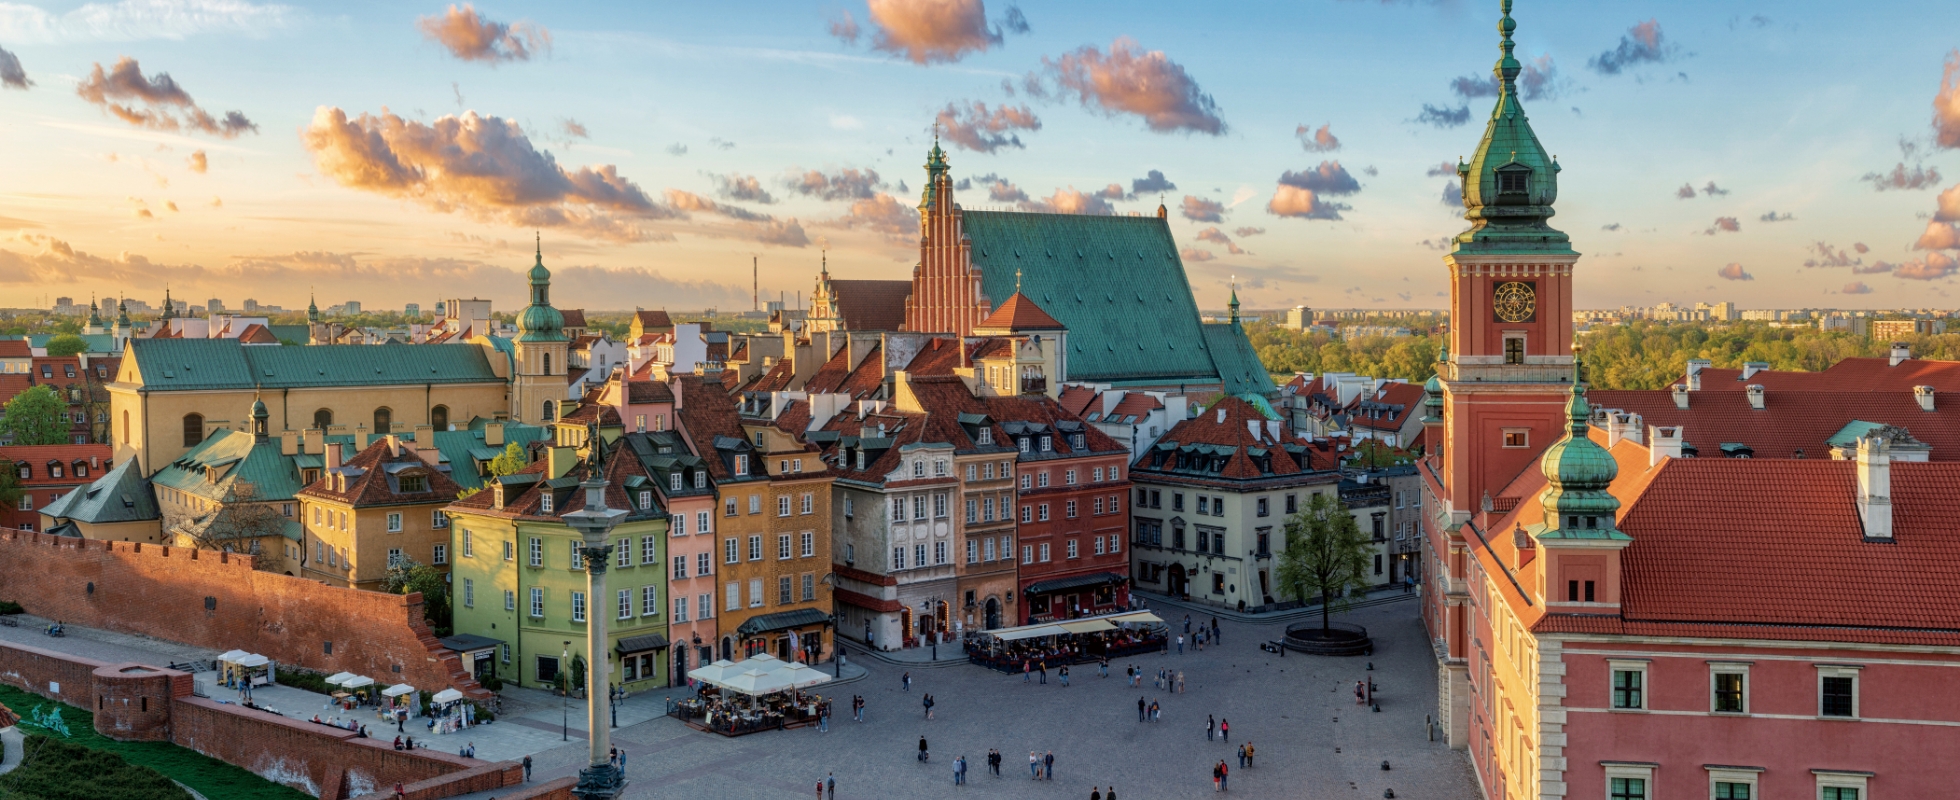 破壊と再興を繰り返して築かれた古い街並みを第2次大戦後に再現することで、常に歴史を大事にしつつ新しい分野を切り開く今の中東欧を象徴するポーランドのワルシャワ歴史地区の画像